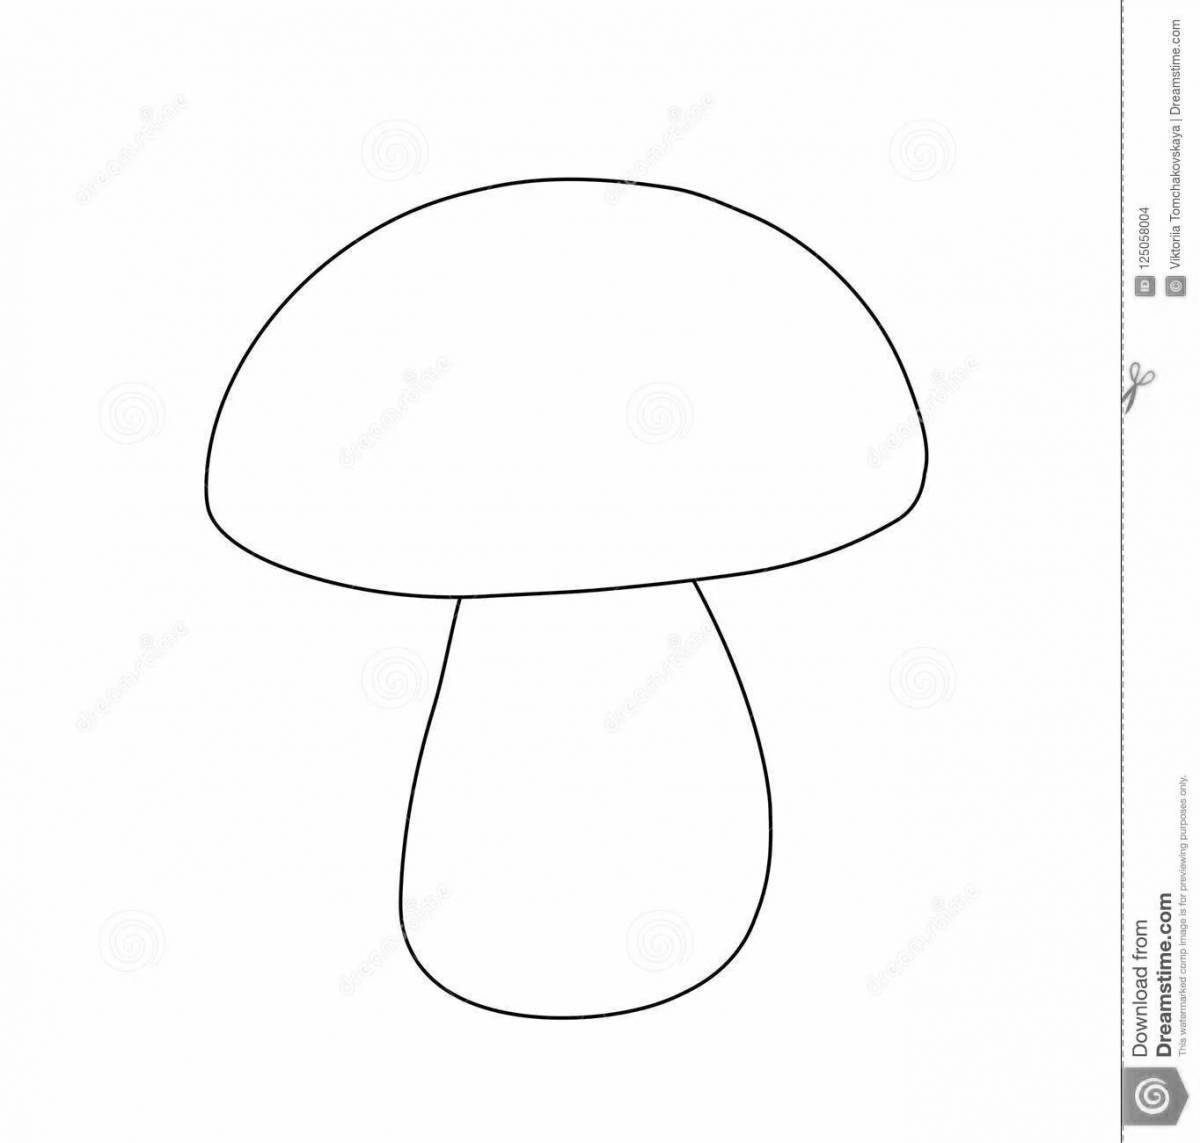 Creative mushroom coloring book for kids